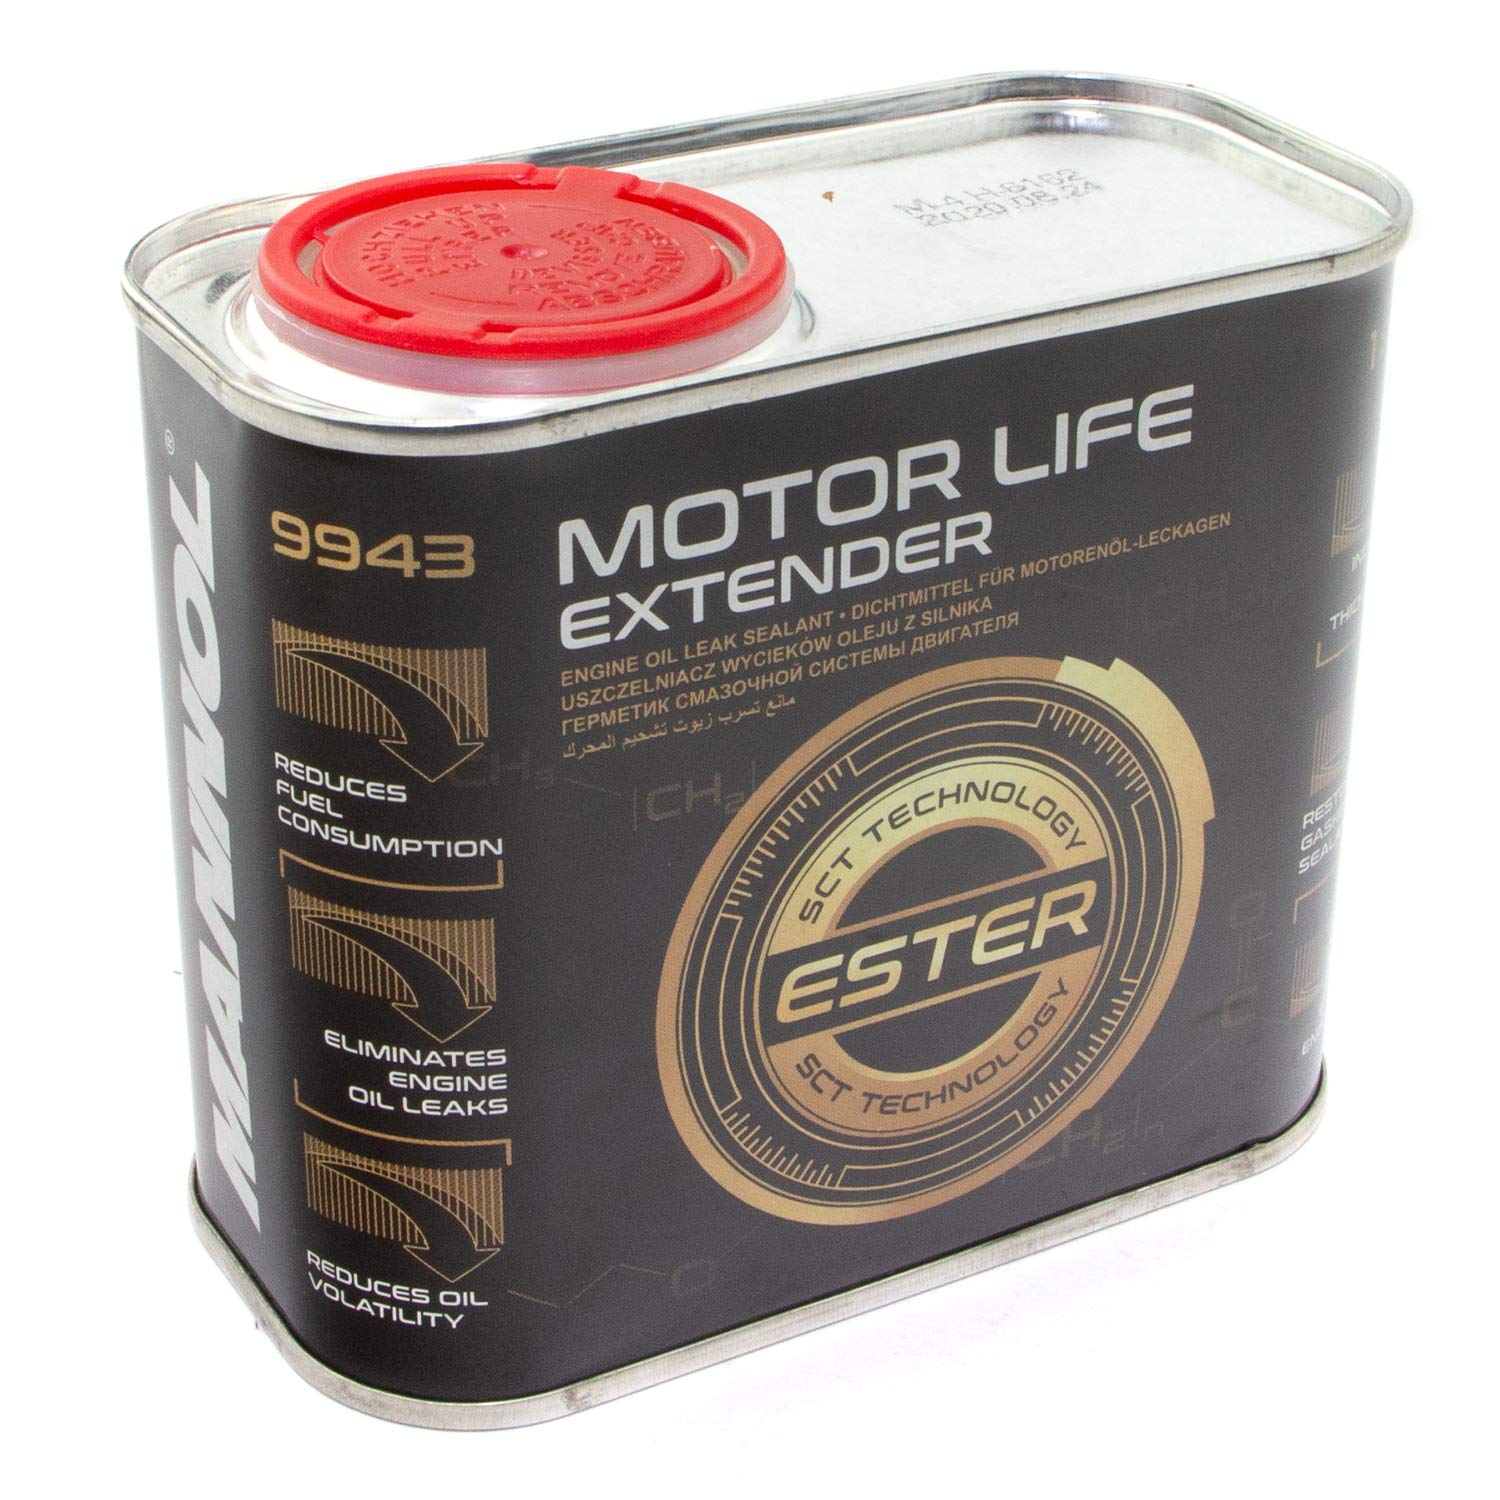 Motor Life Extender Additiv Schutz Benzin Diesel Motorschutz Dichtmittel Mannol 500 ml von MANNOL